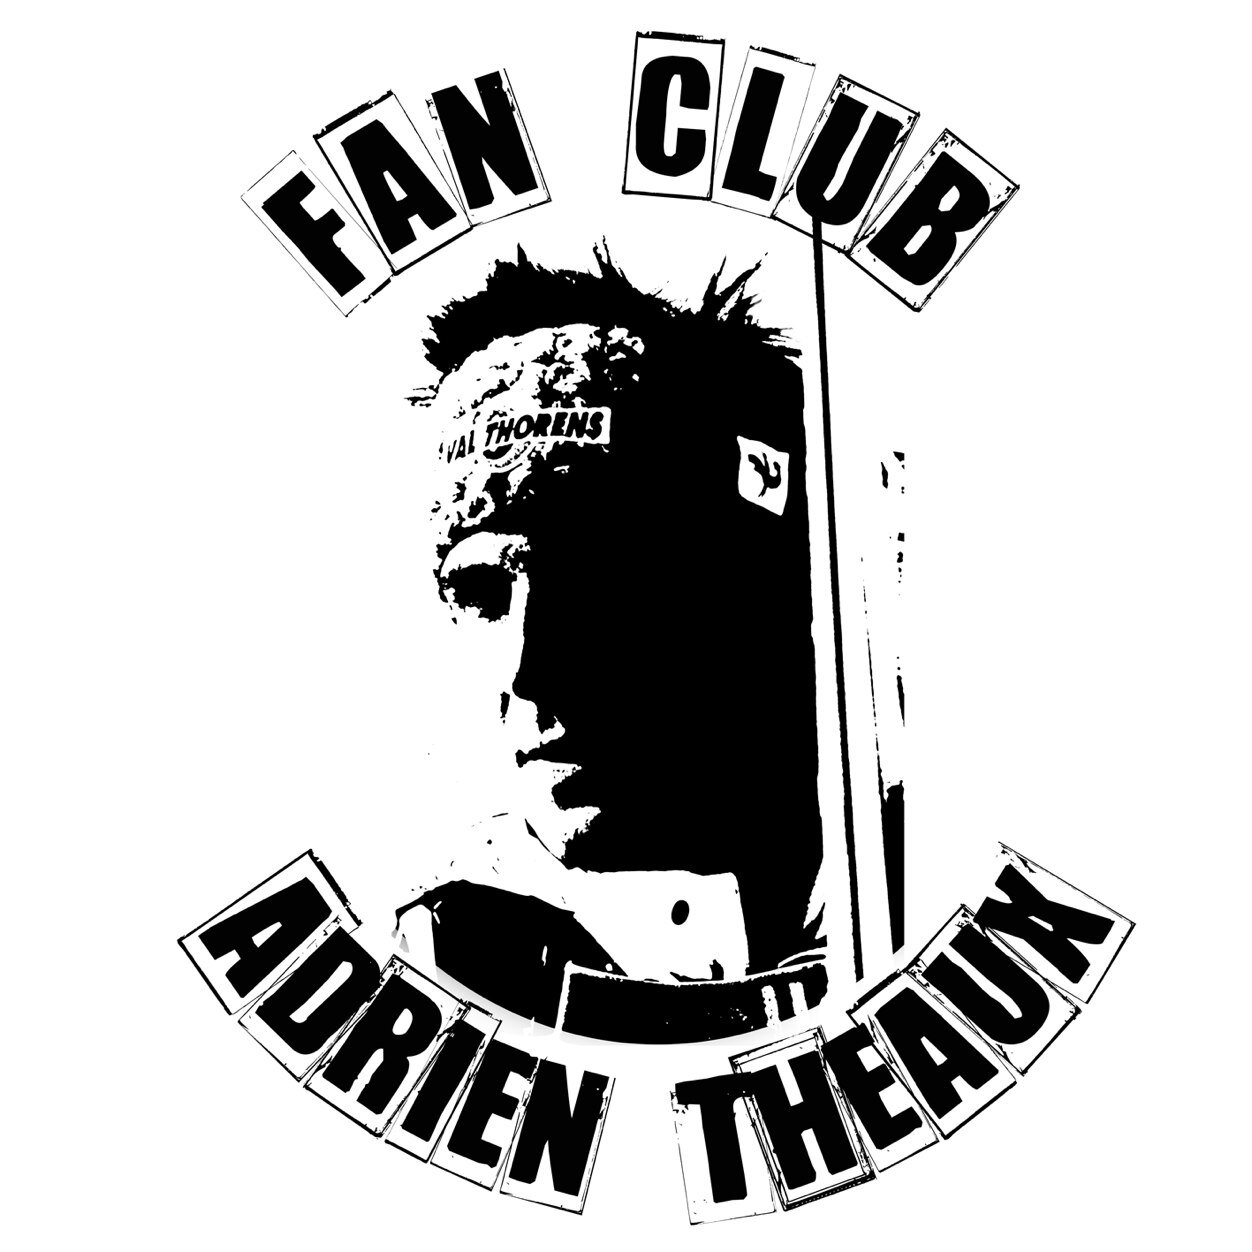 Fan Club Officiel d'Adrien Theaux ...600 Adhérents ... à l'heure actuelle ! Thierry Beuchot President du Fan Club